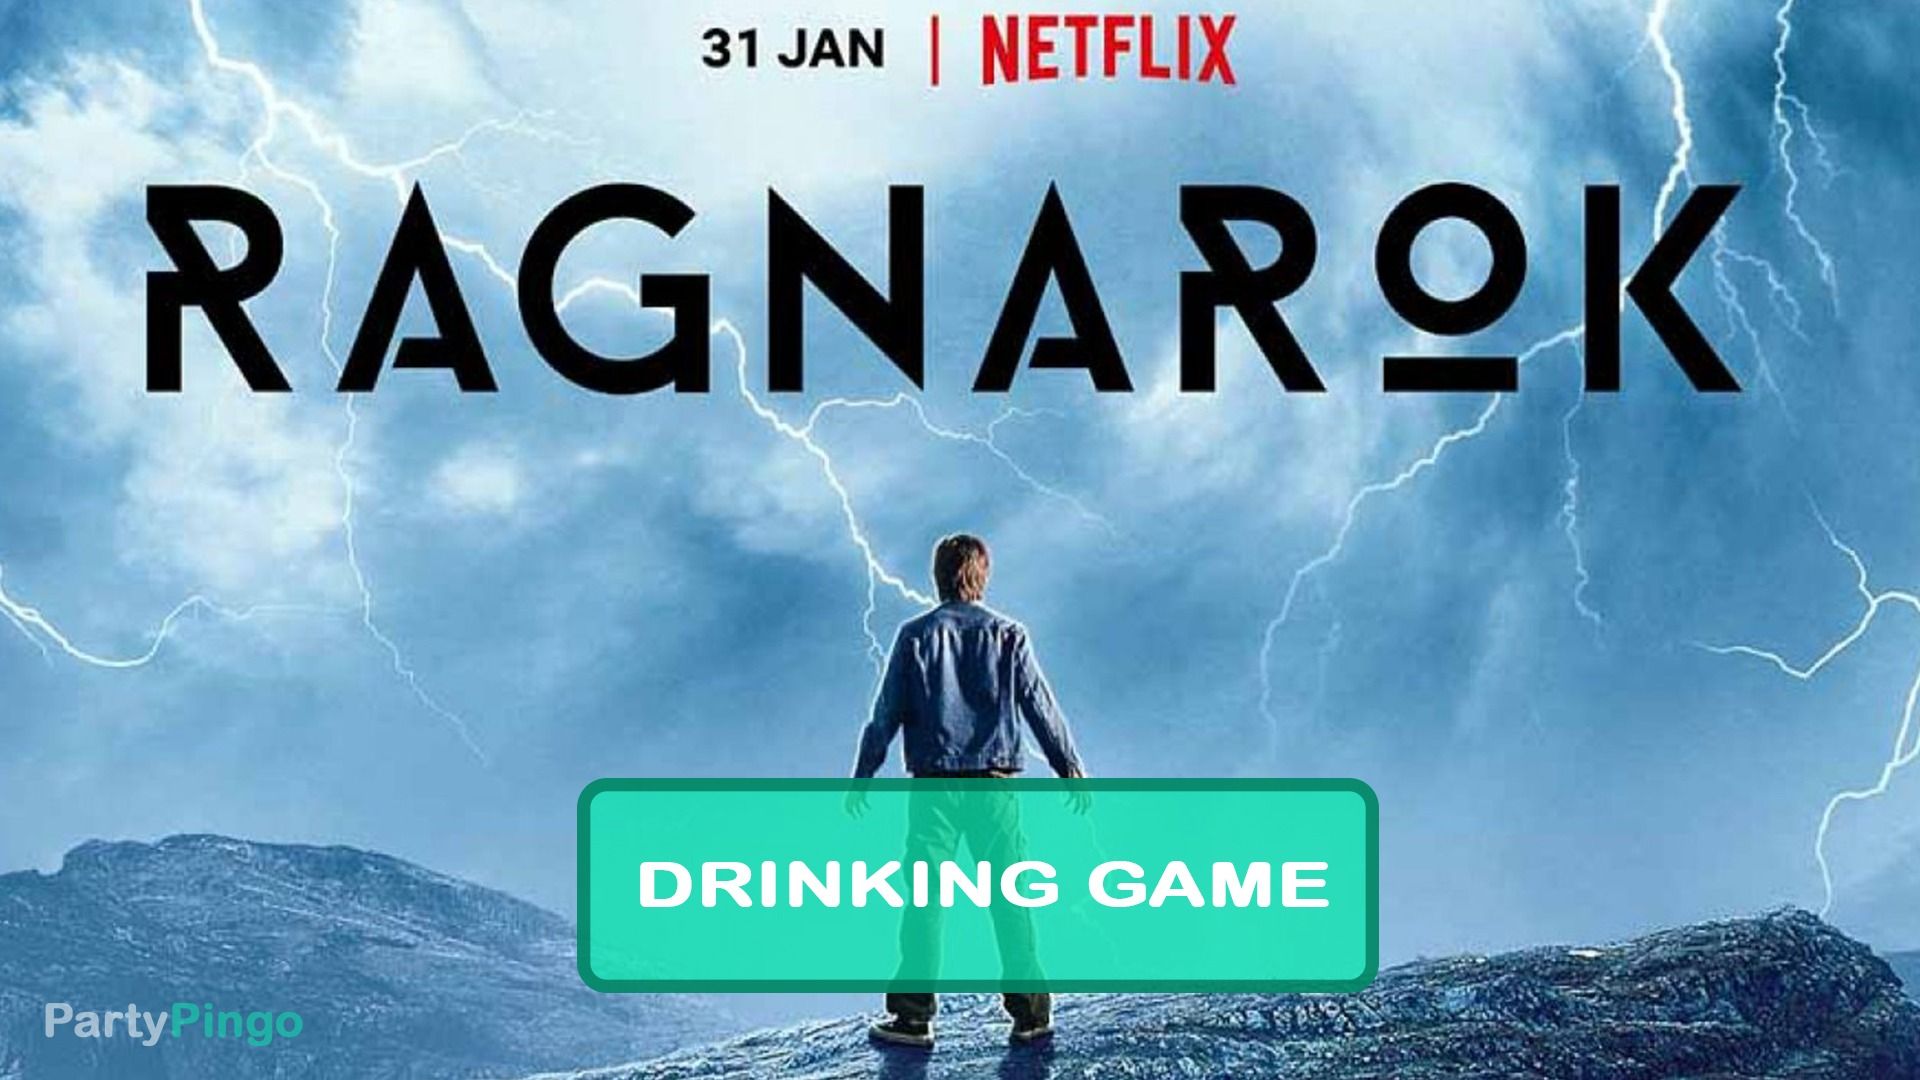 Ragnarok Netflix Drinking Game